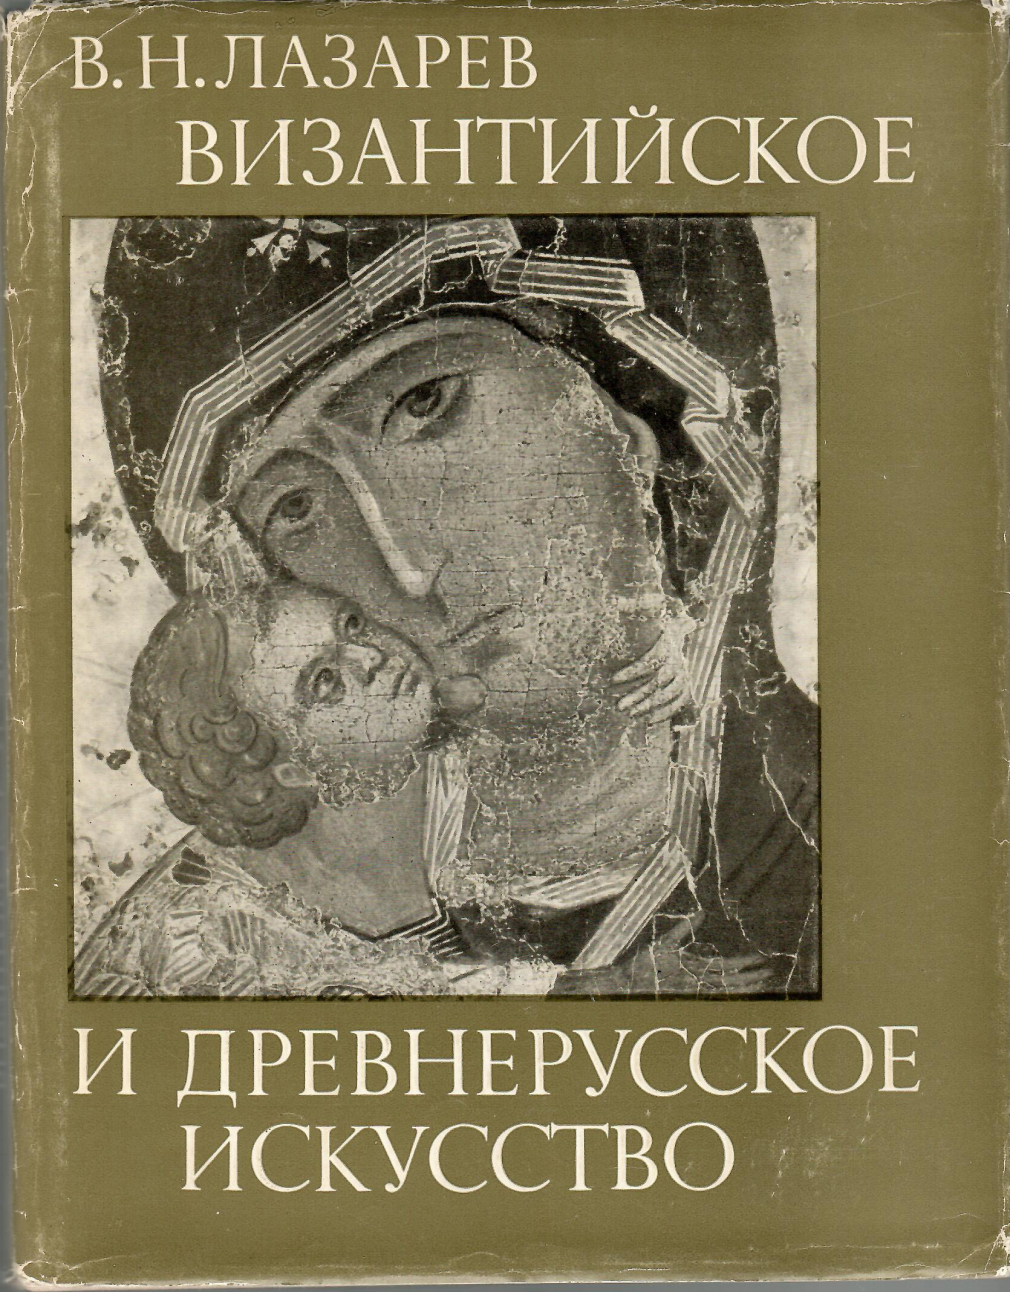 В.Н.Лазарев. Византийское и древнерусское искусство 25-19